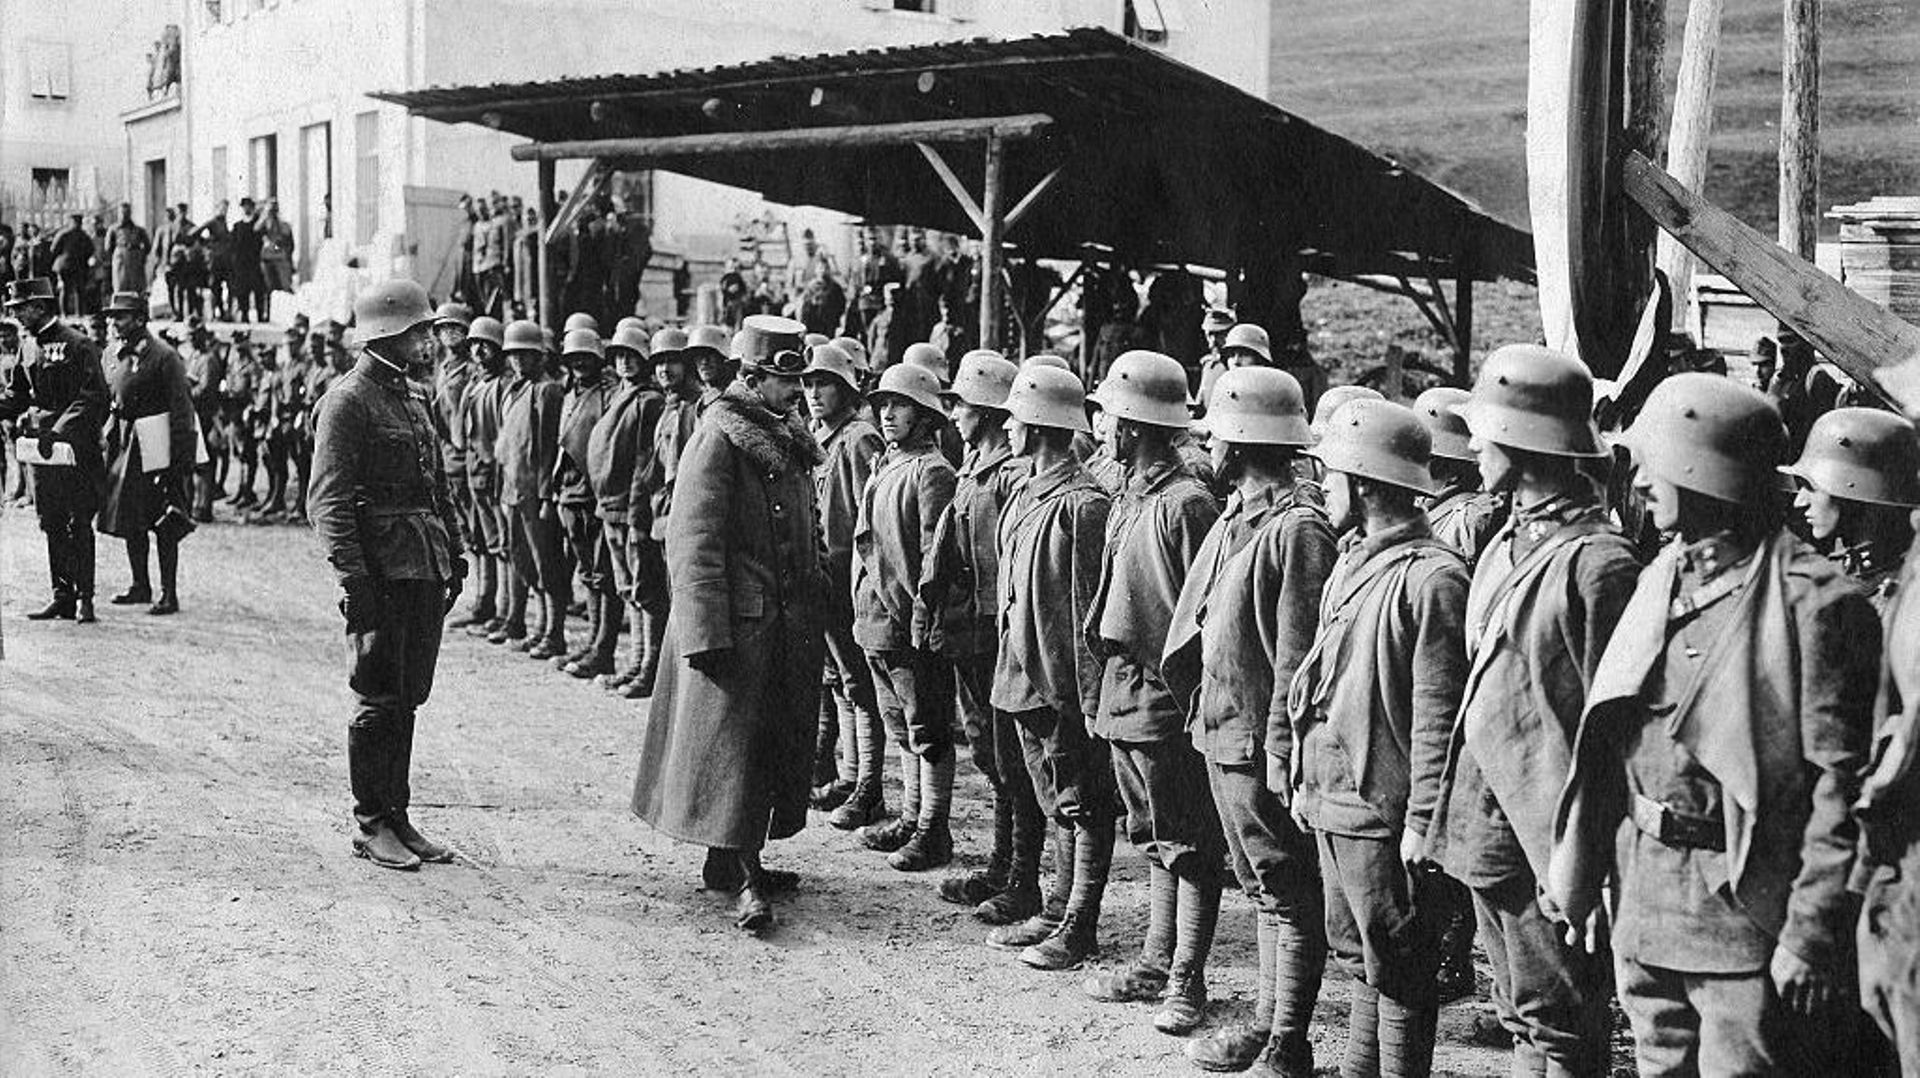 Charles Ier d'Autriche-Hongrie (1887-1922) empereur d'Autriche, roi de Hongrie et roi de Bohême de 1916 à 1918 inspecte ses troupes à Fleimstal (aujourd'hui Val di Fiemme, en Italie, dans la région de Trentin)